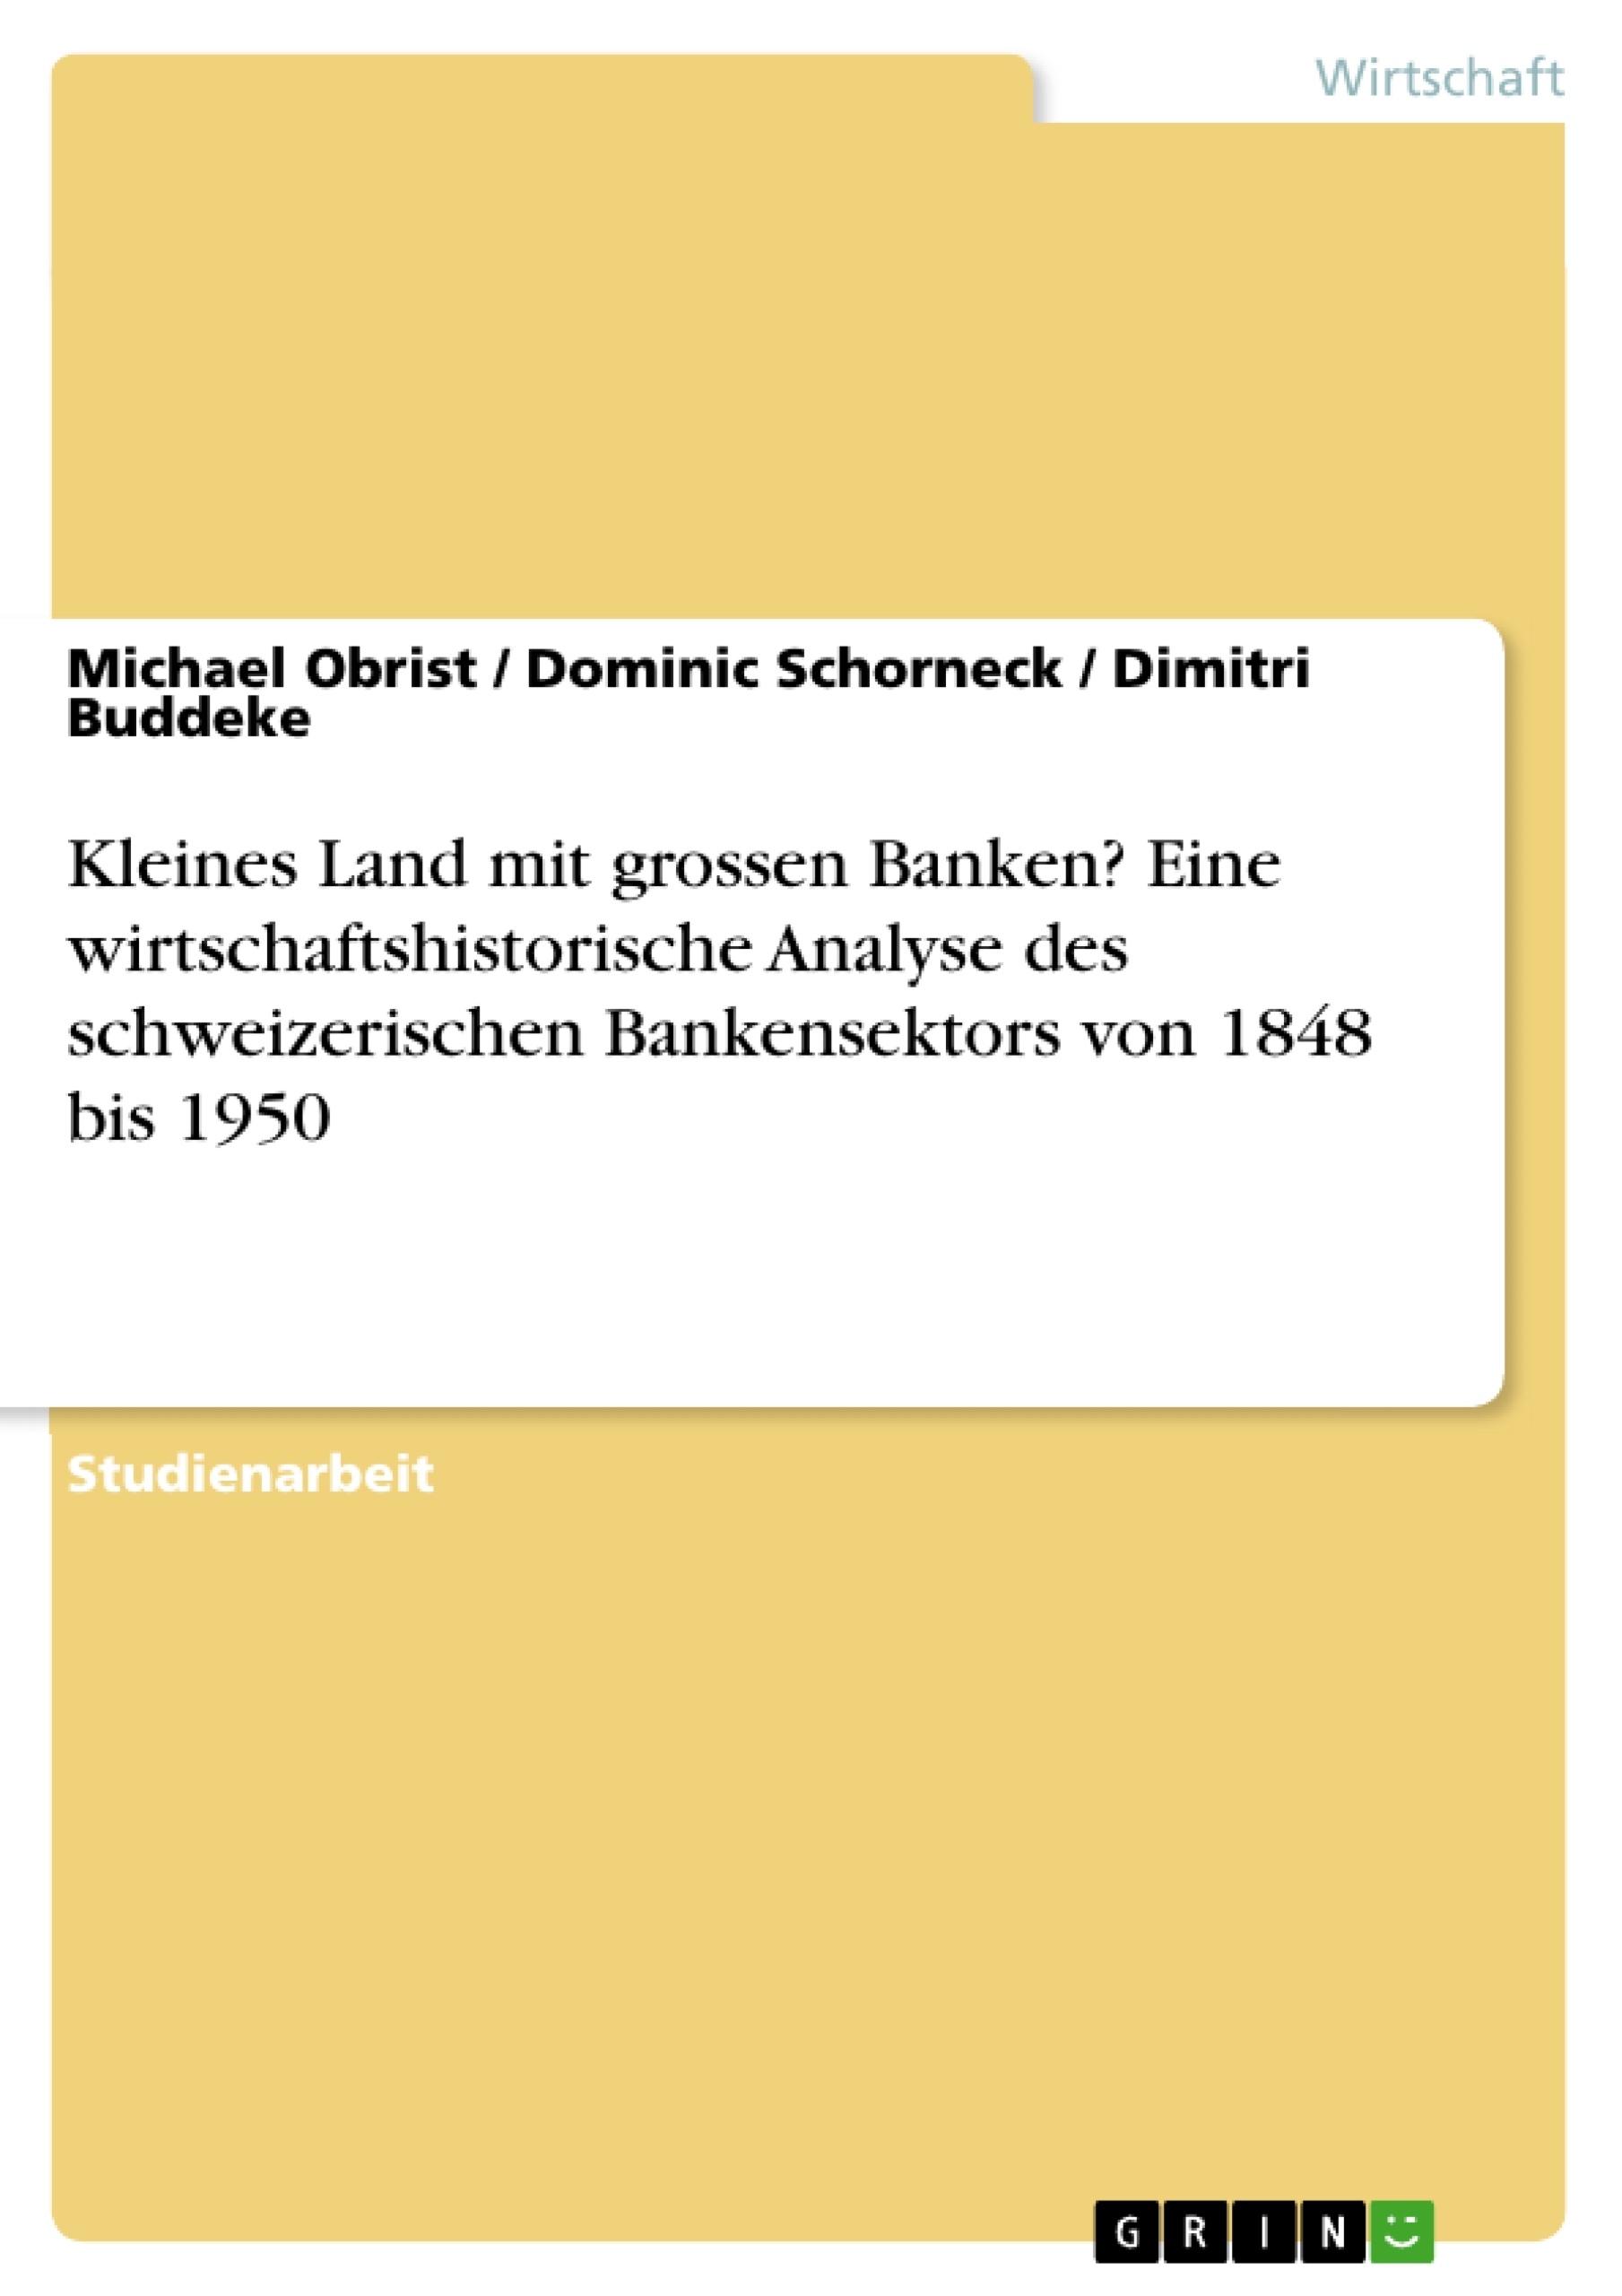 Title: Kleines Land mit grossen Banken? Eine wirtschaftshistorische Analyse des schweizerischen Bankensektors von 1848 bis 1950